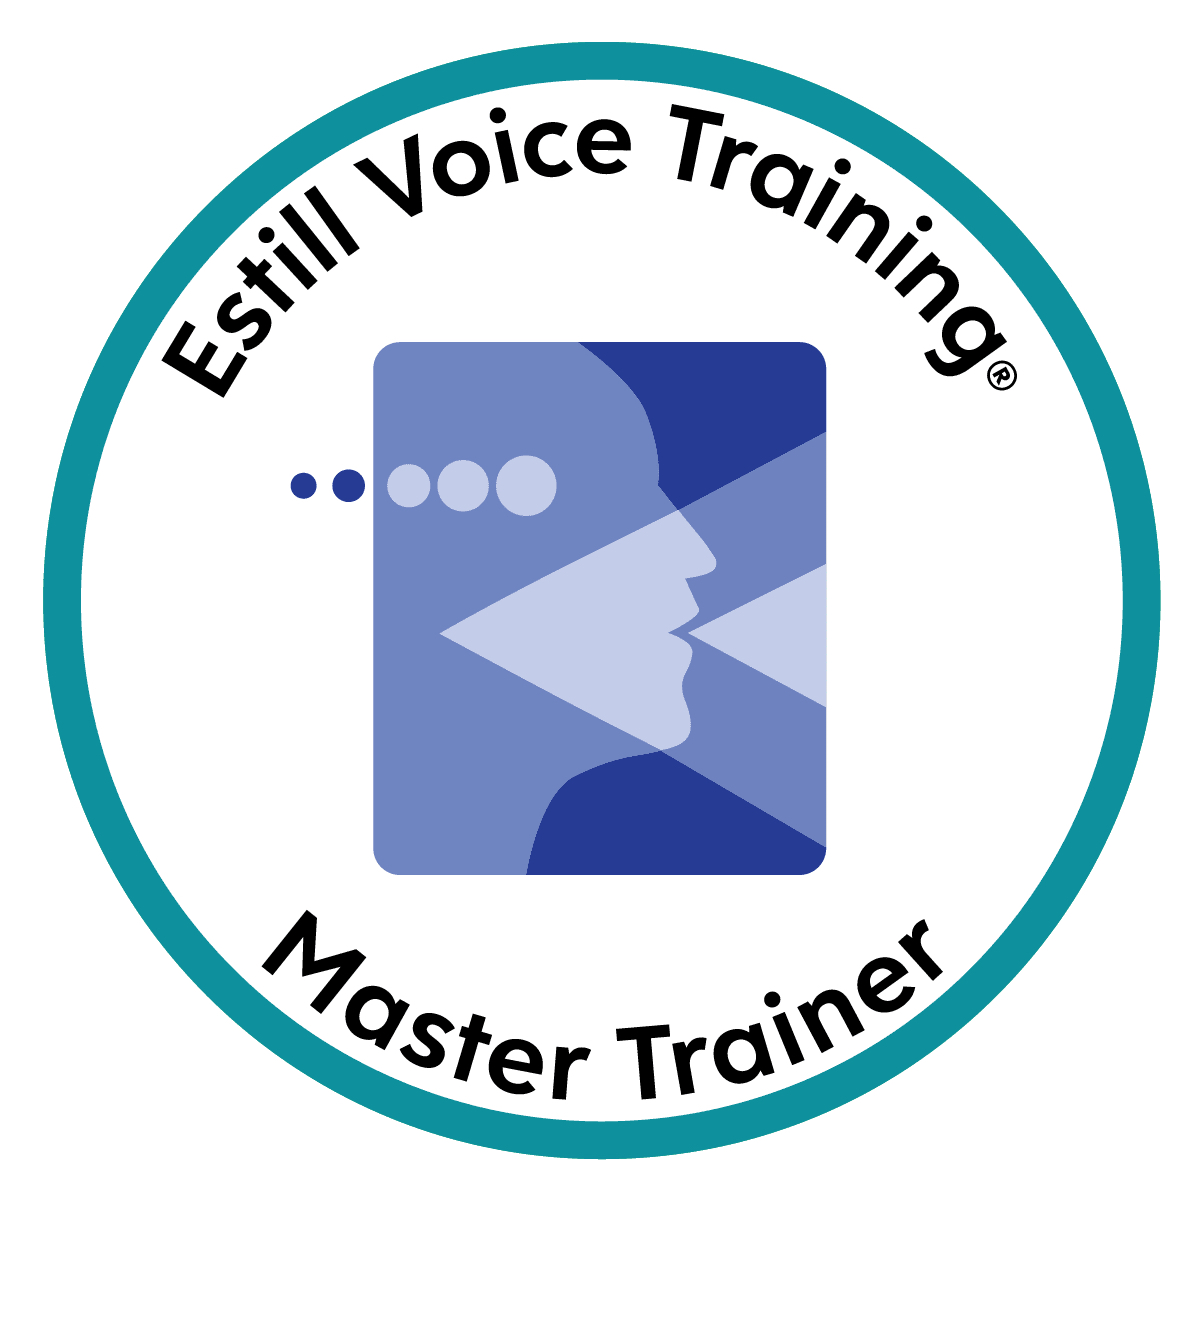 Estill Voice Training Master Trainer